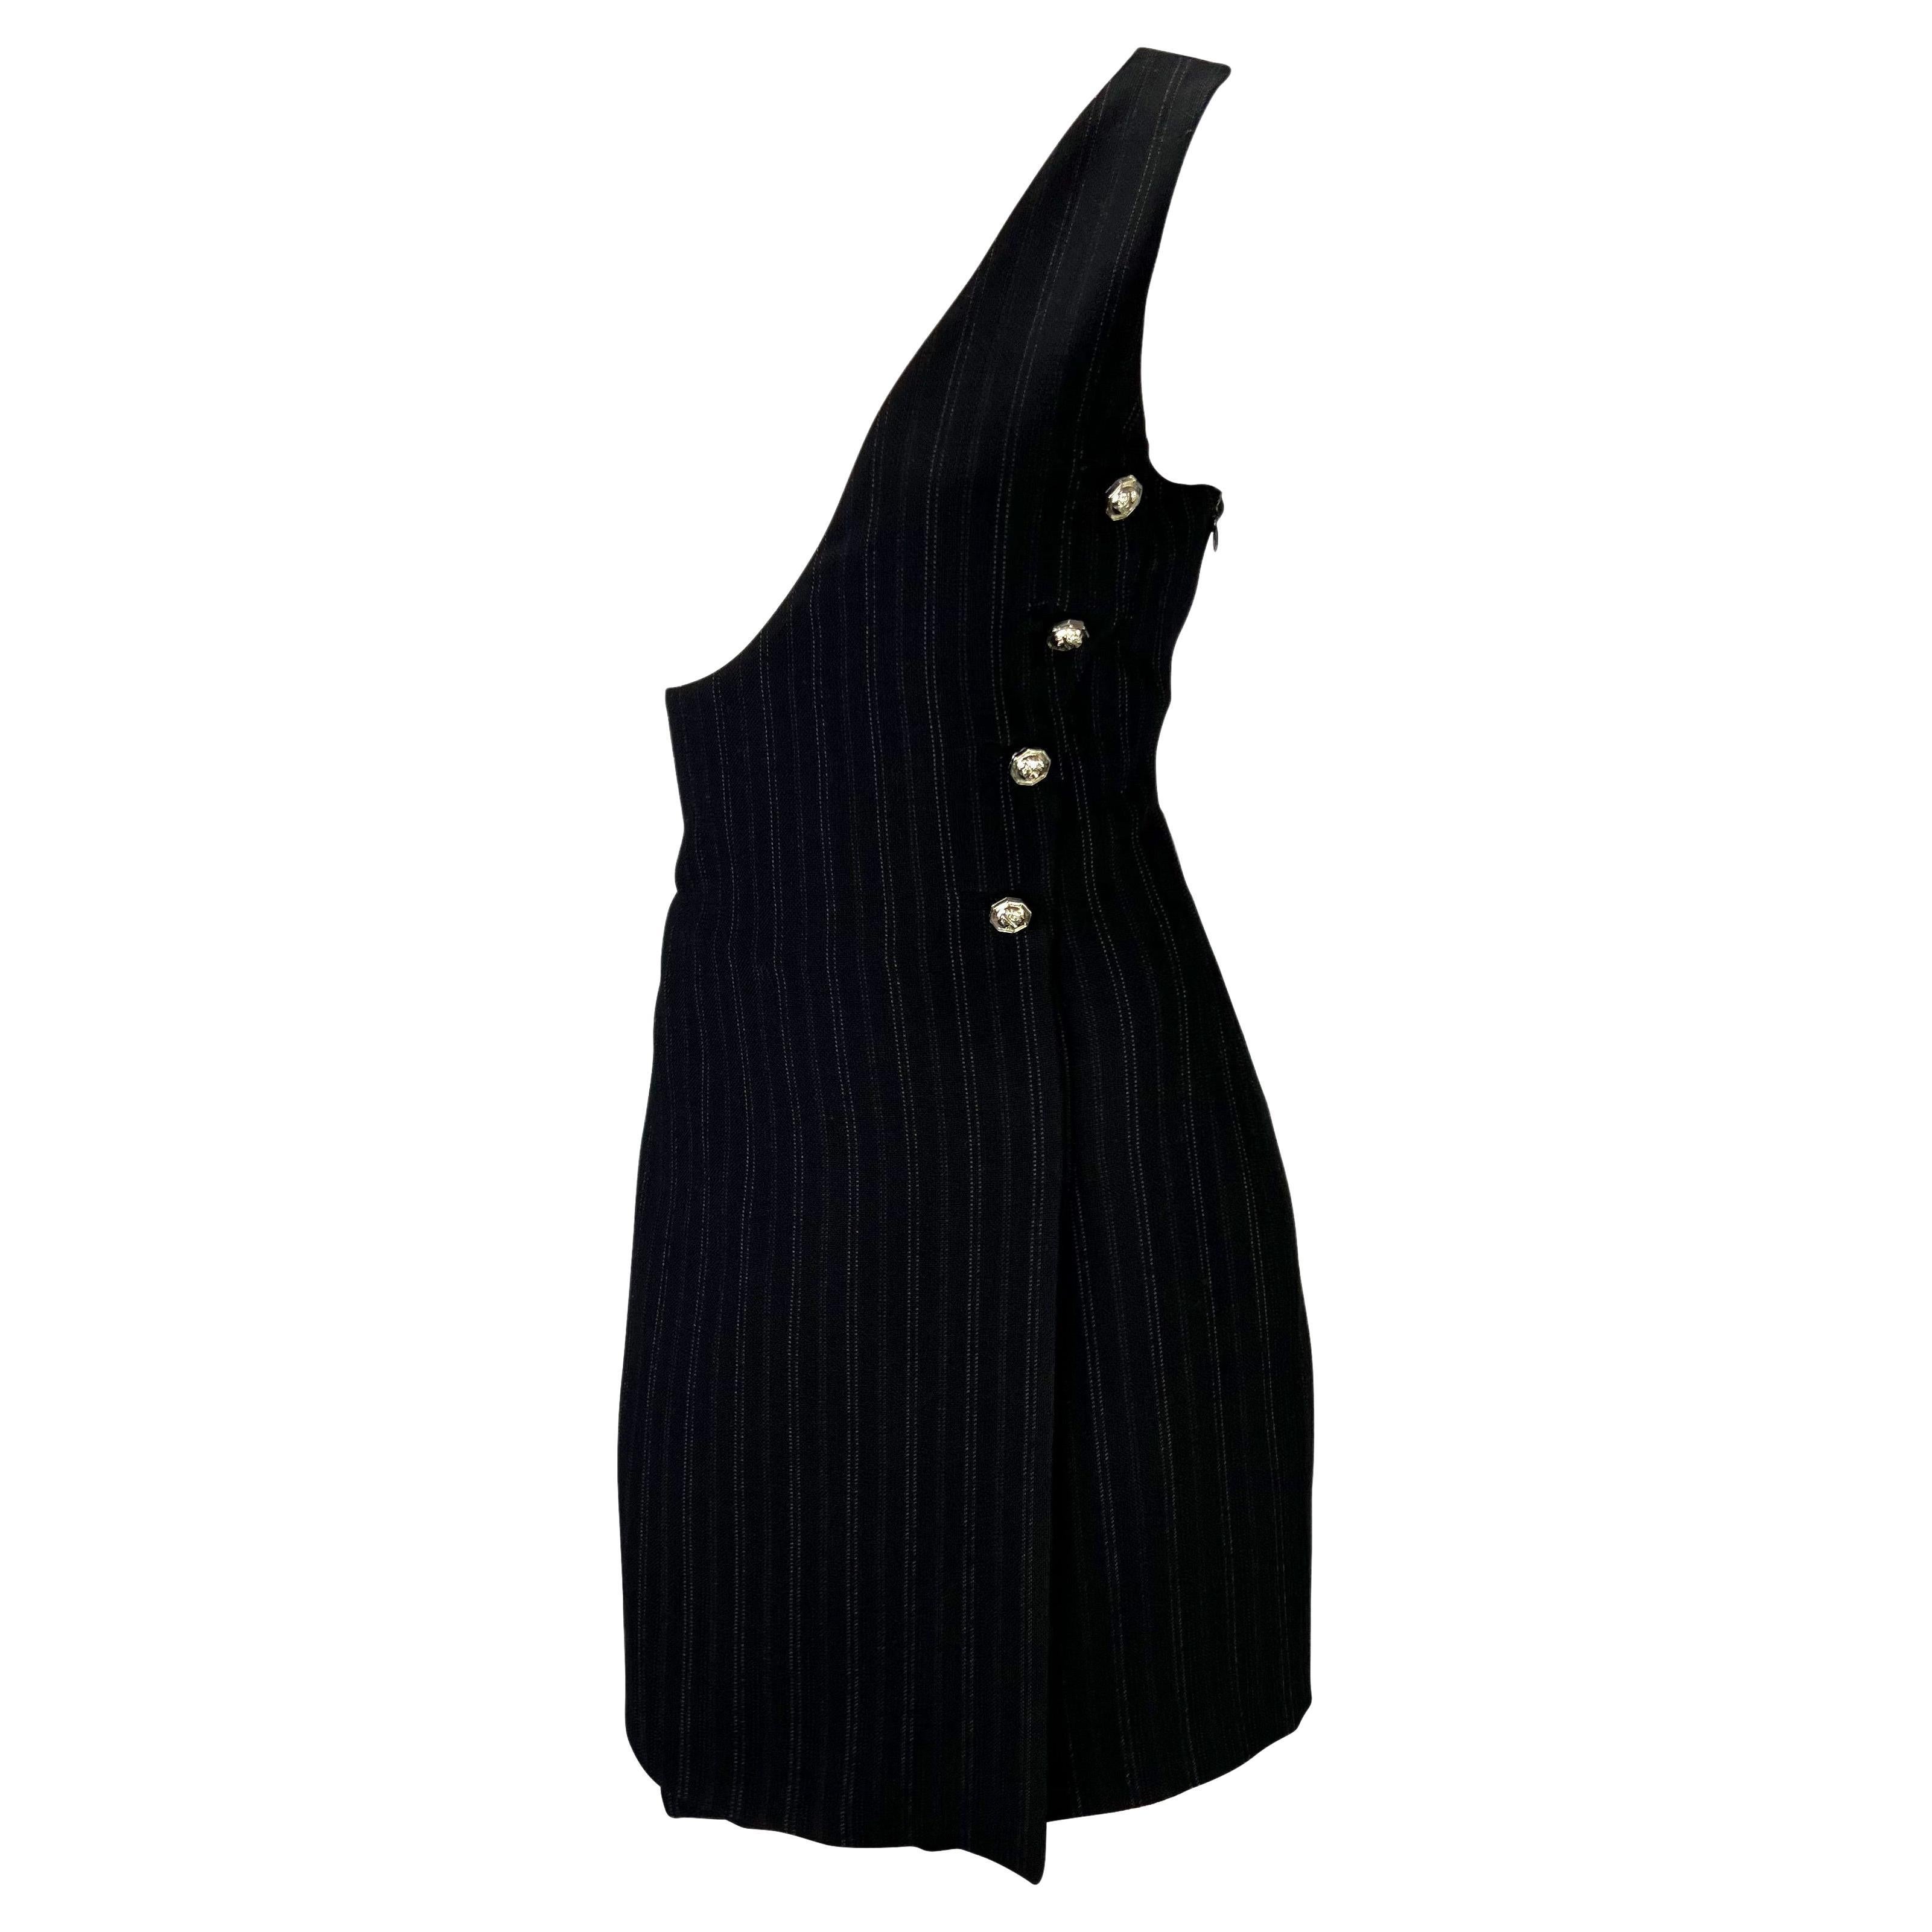 Collectional présente une robe asymétrique à rayures conçue par Gianni Versace pour sa collection printemps/été 1994 d'inspiration punk. De faux boutons argentés en forme de Méduse soulignent le buste et la taille pour compléter le style faussement